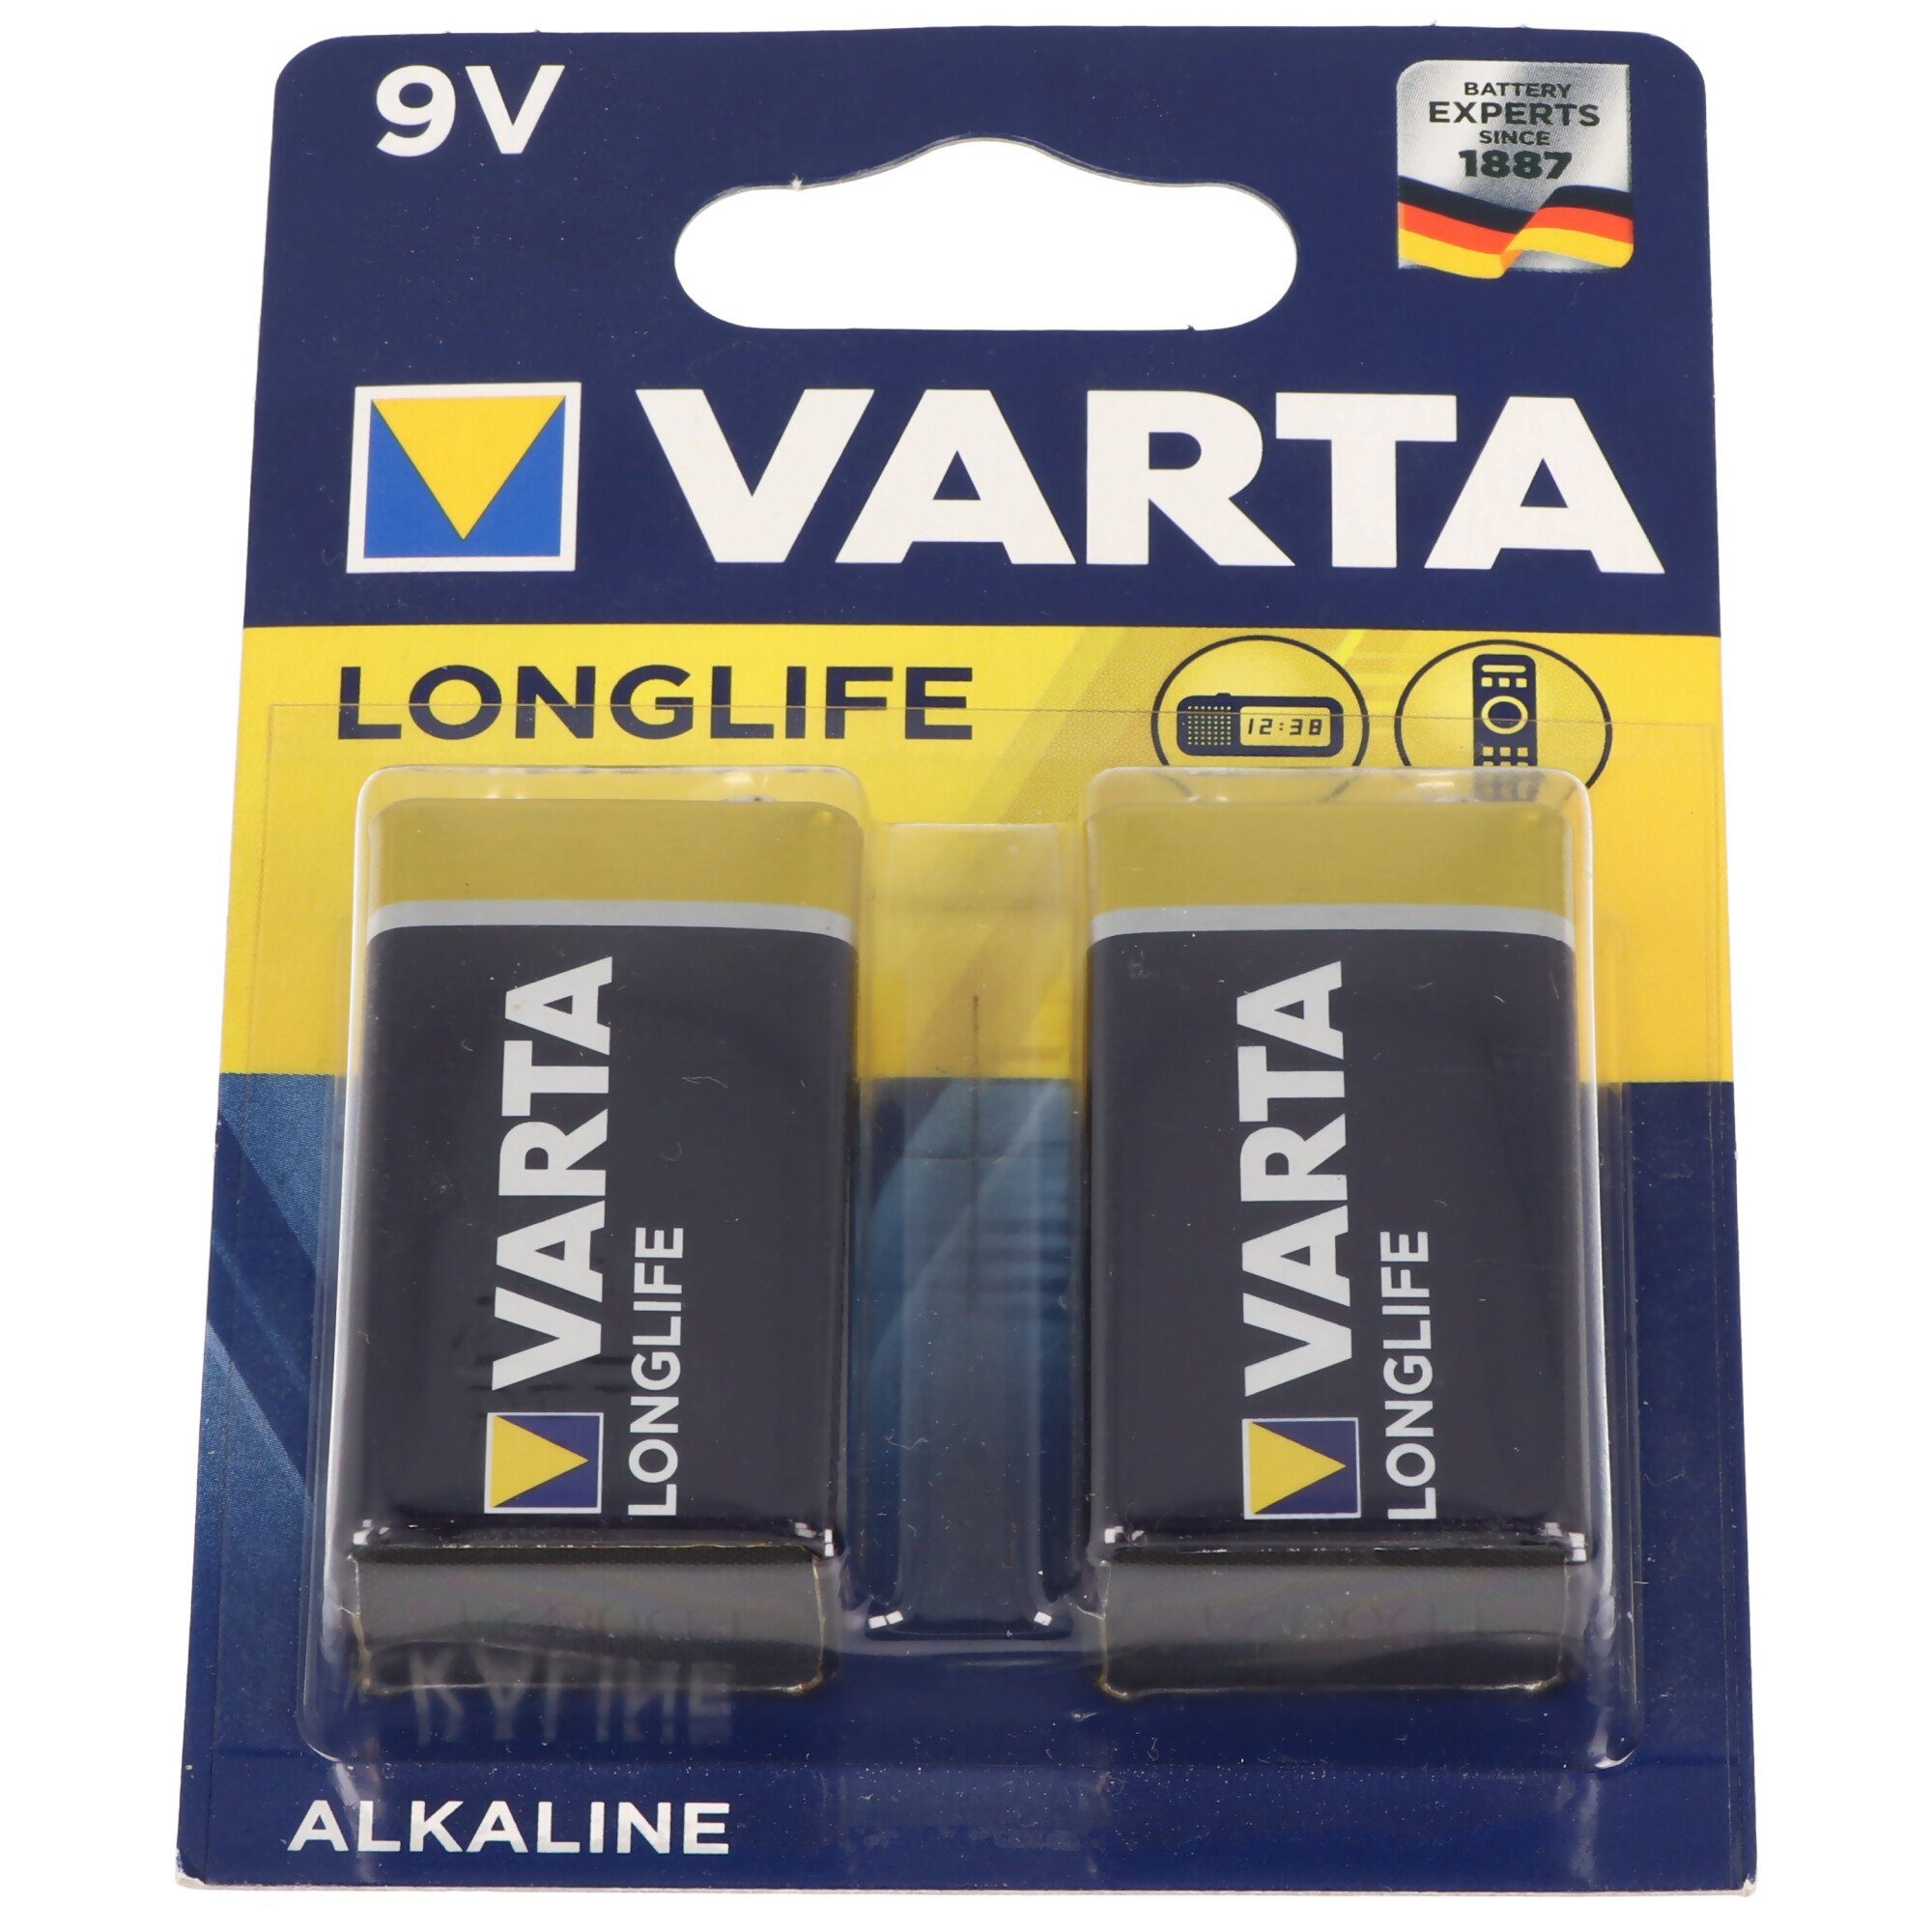 VARTA Varta Batterie Alkaline E-Block 6LP3146 9V Longlife Power Retail Blis  Batterie, (9,0 V)